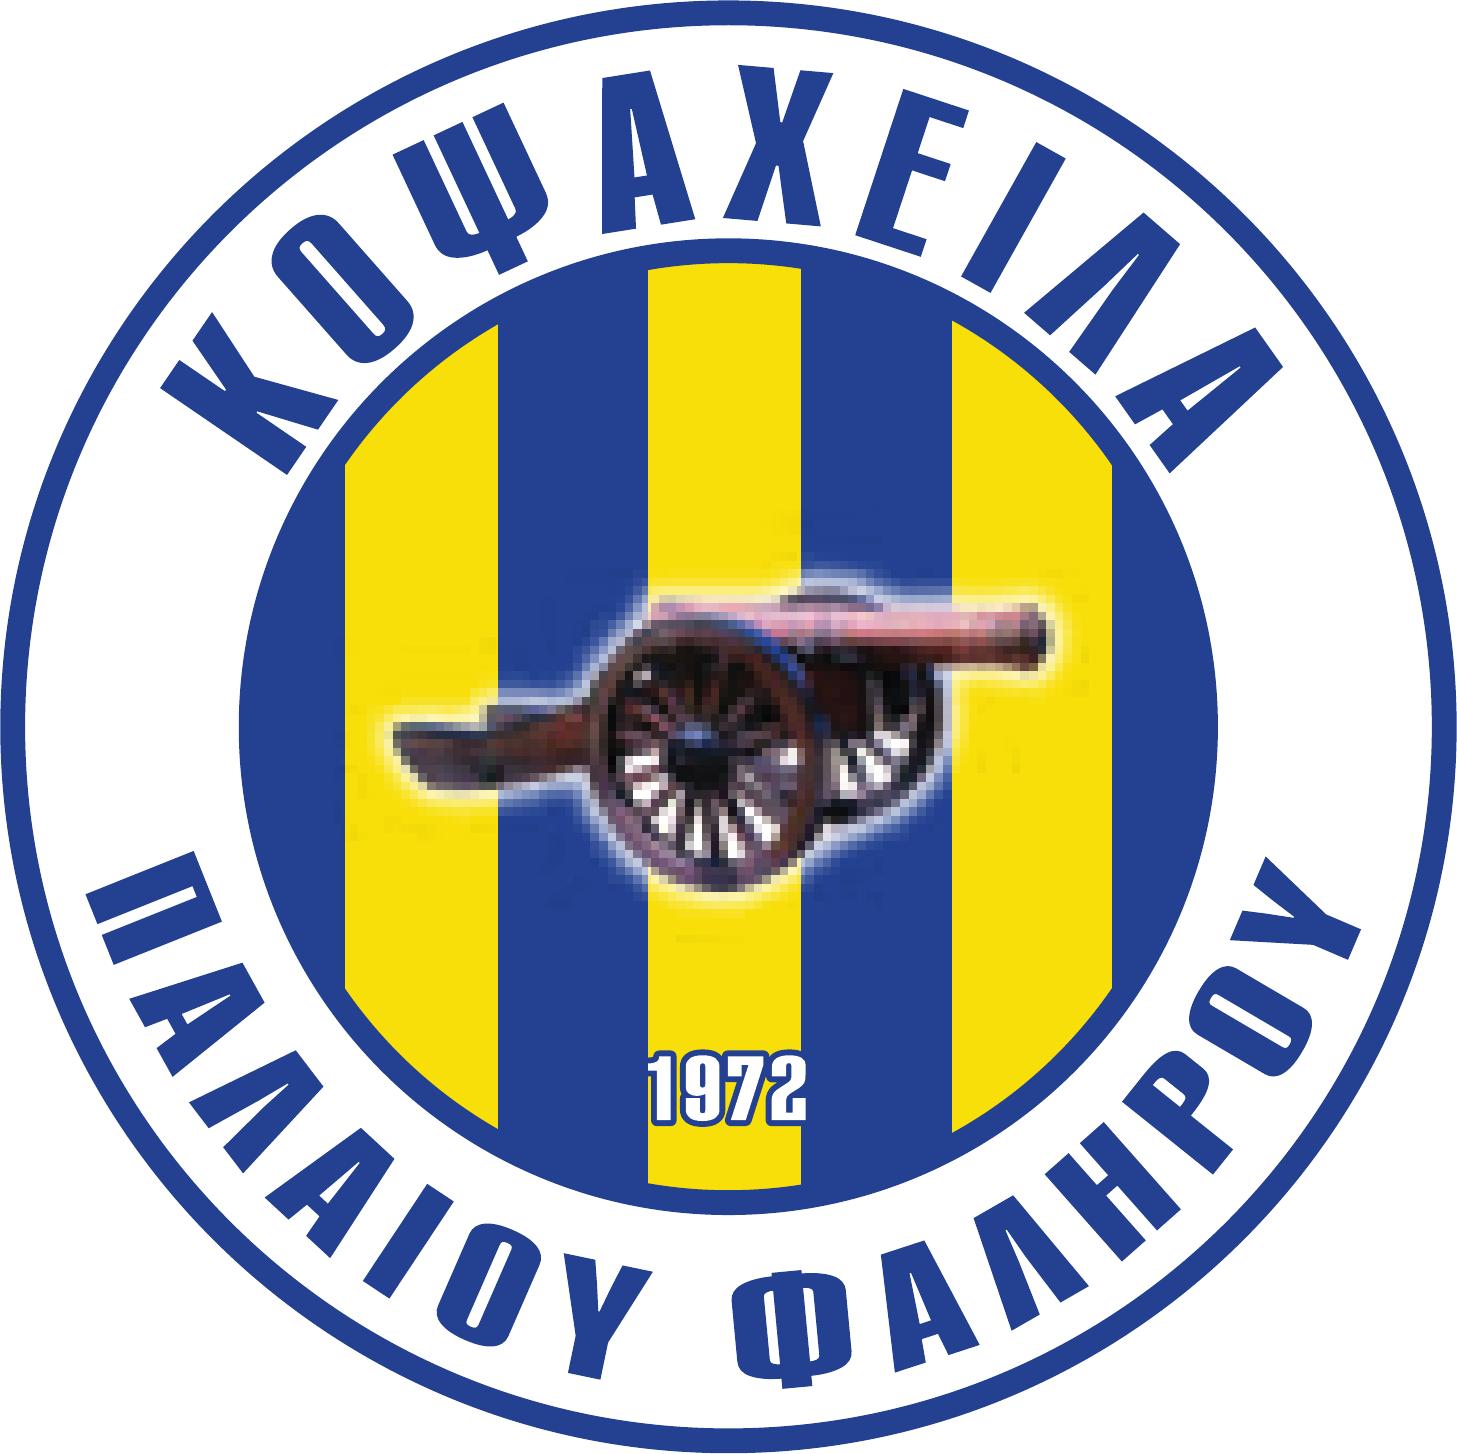 Αθλητικός Σύλλογος Κοψαχείλα Παλαιού Φαλήρου logo